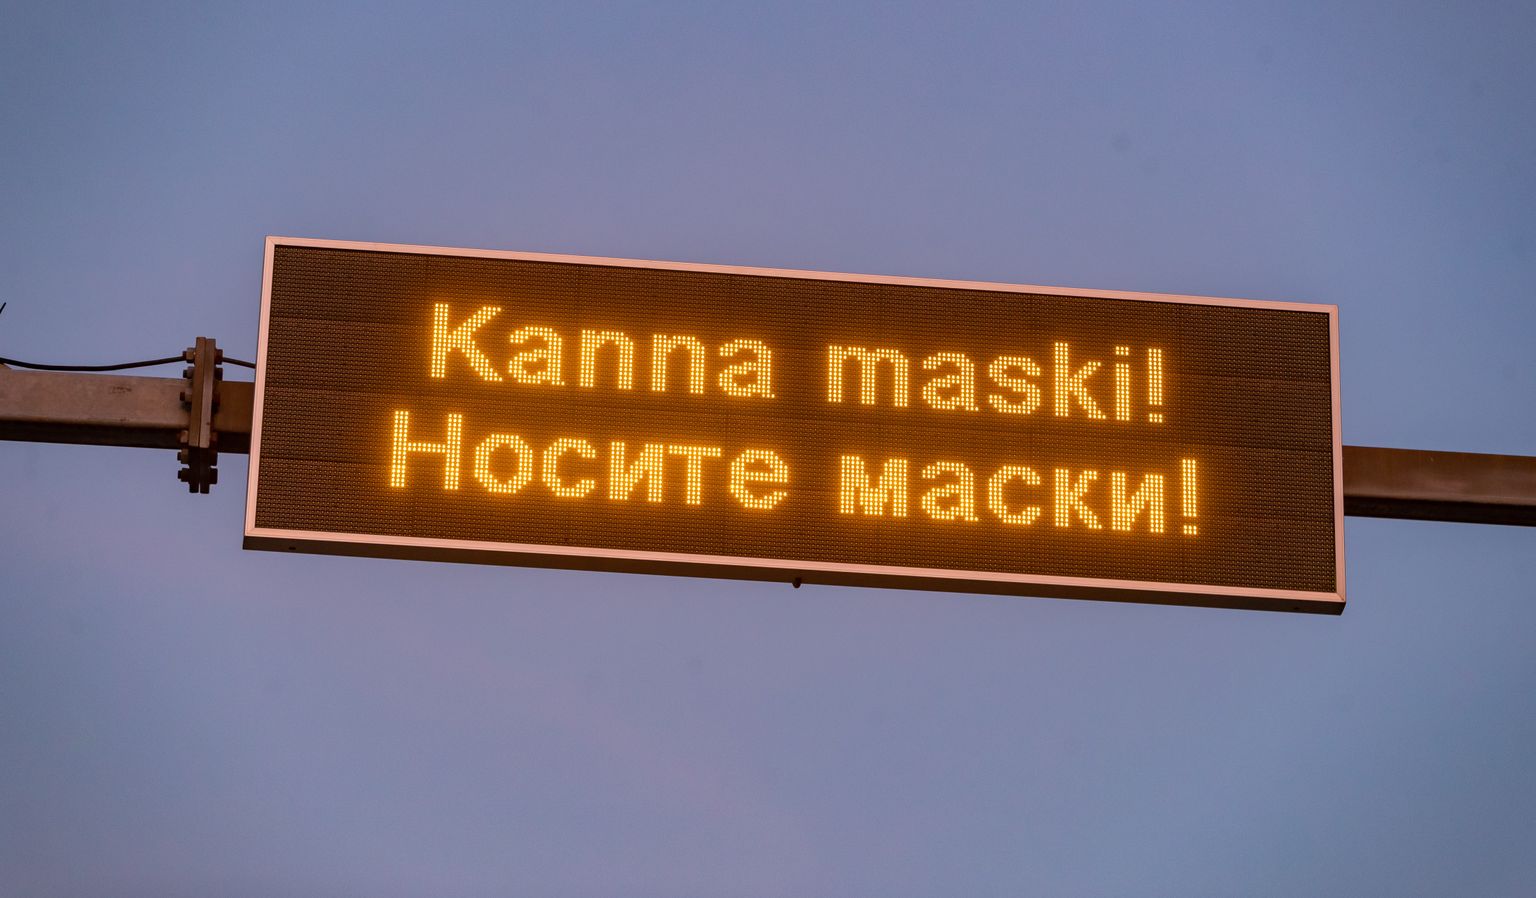 "Kanna maski"! Tallinna liiklusinfo tabloodel.